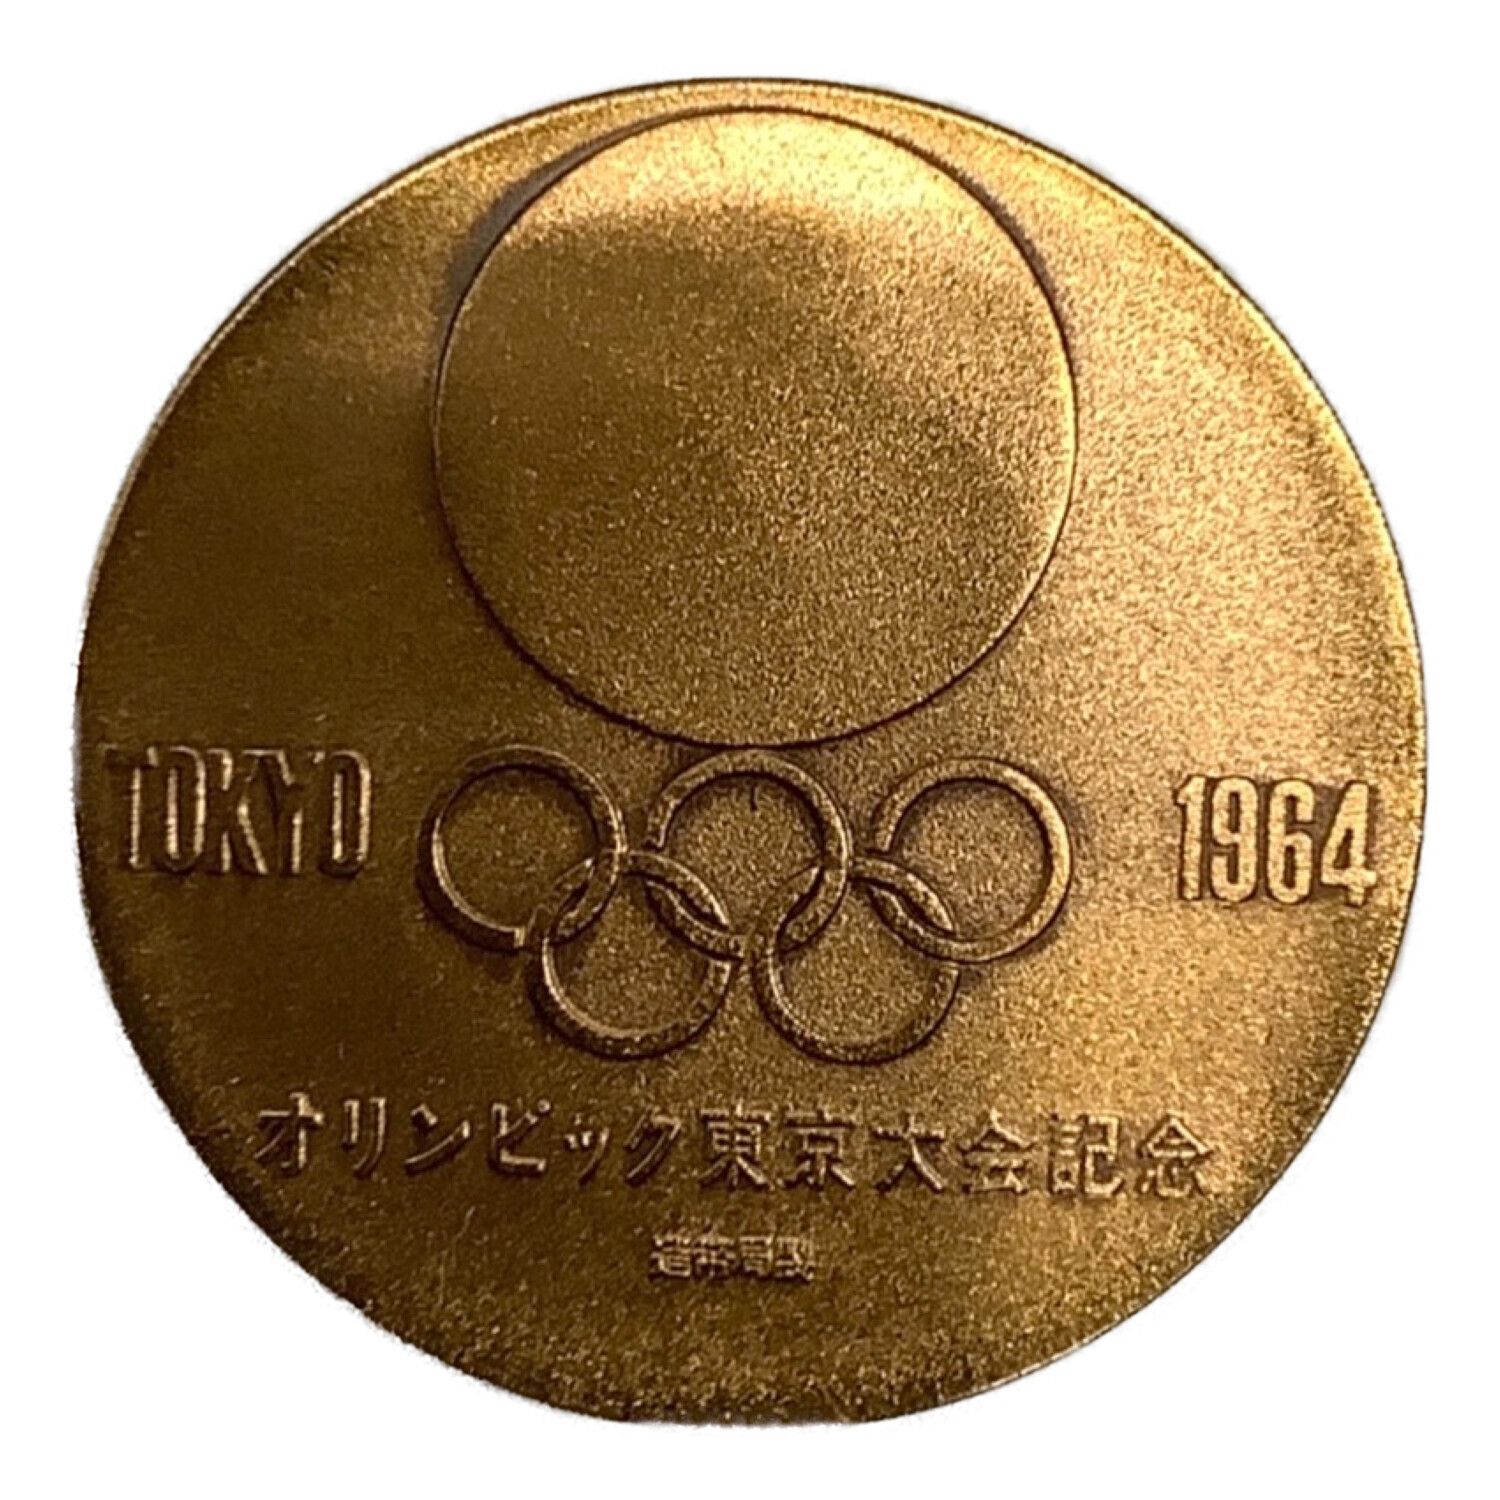 東京オリンピック1964 記念硬貨 www.dinh.dk